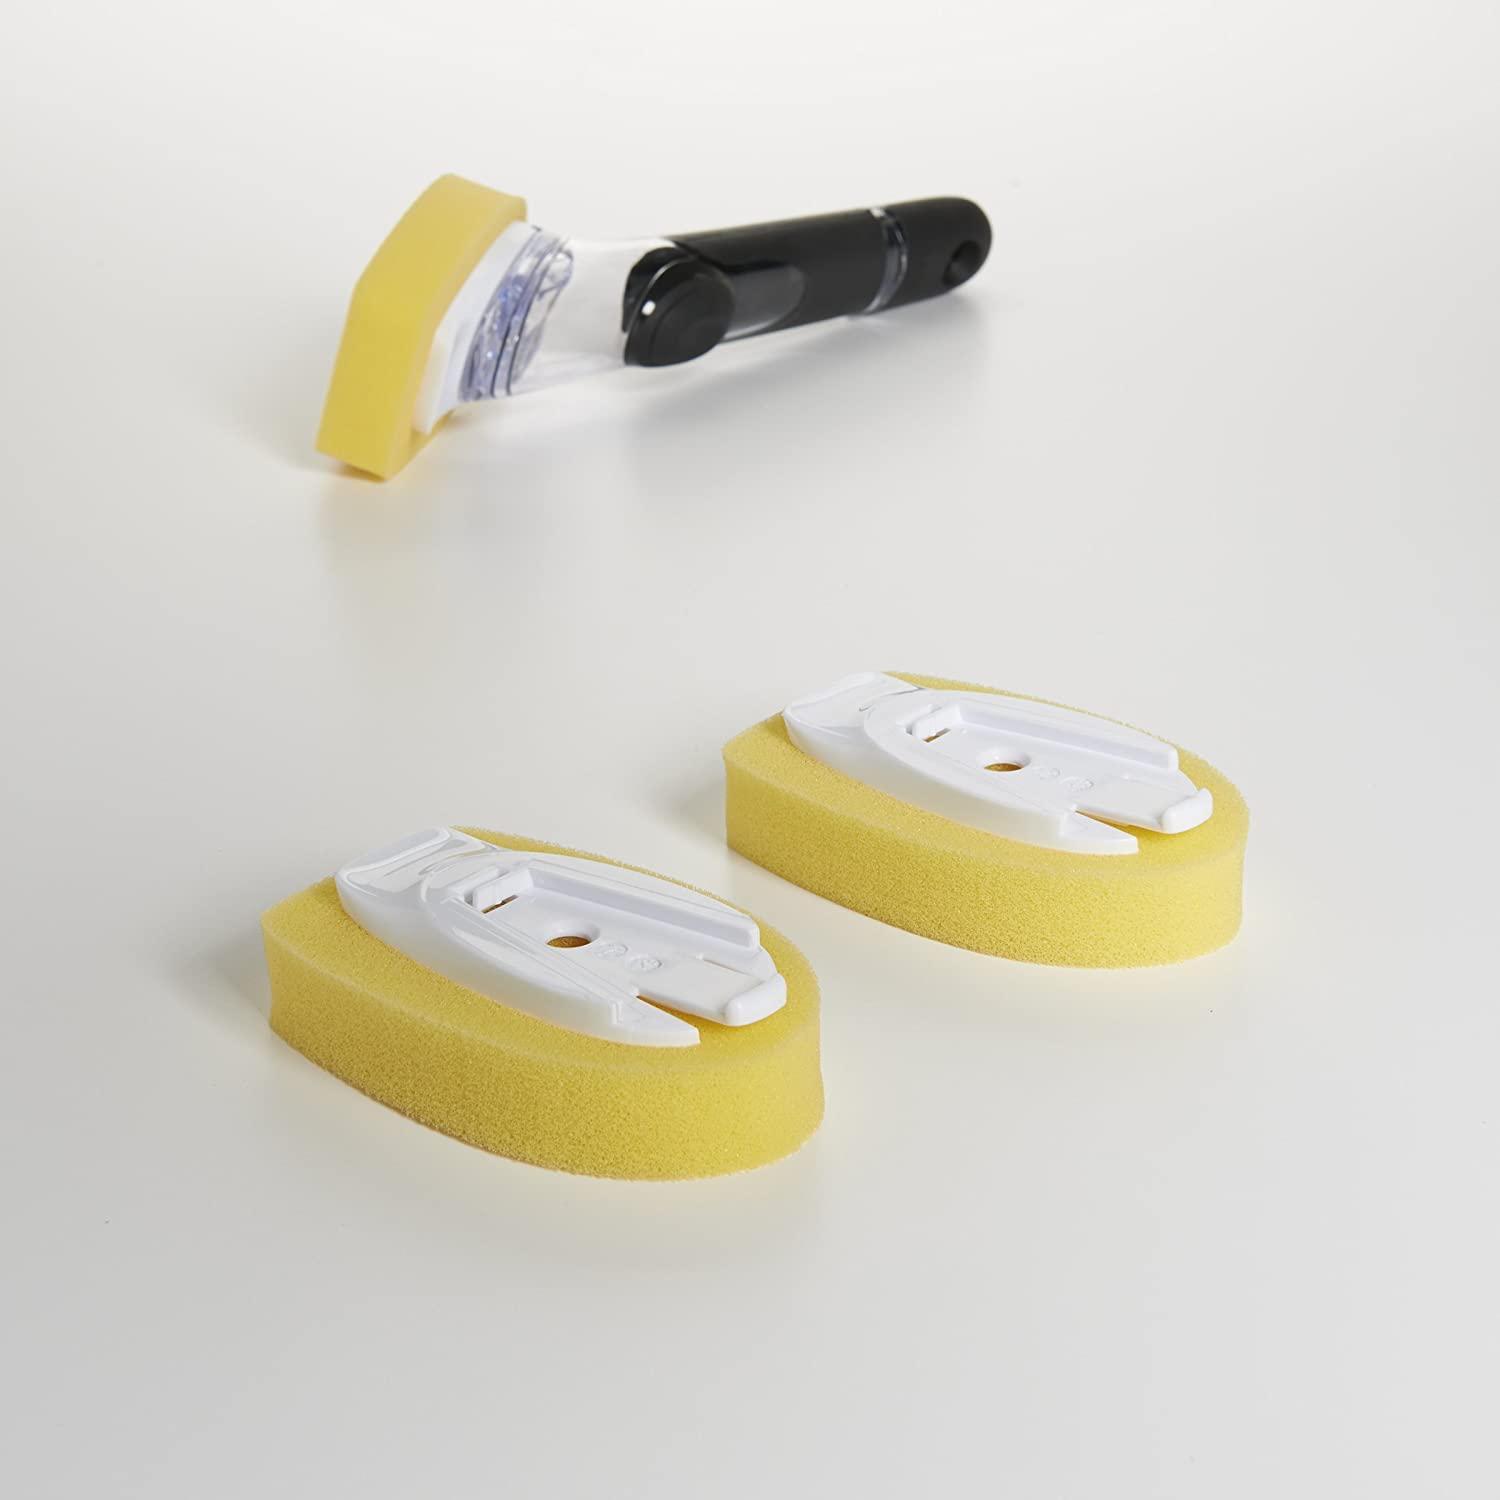 OXO Good Grips Soap Dispensing Dish Sponge Refills, 2-Pack,Yellow,1 EA  2-Pack Dish Sponge Refills